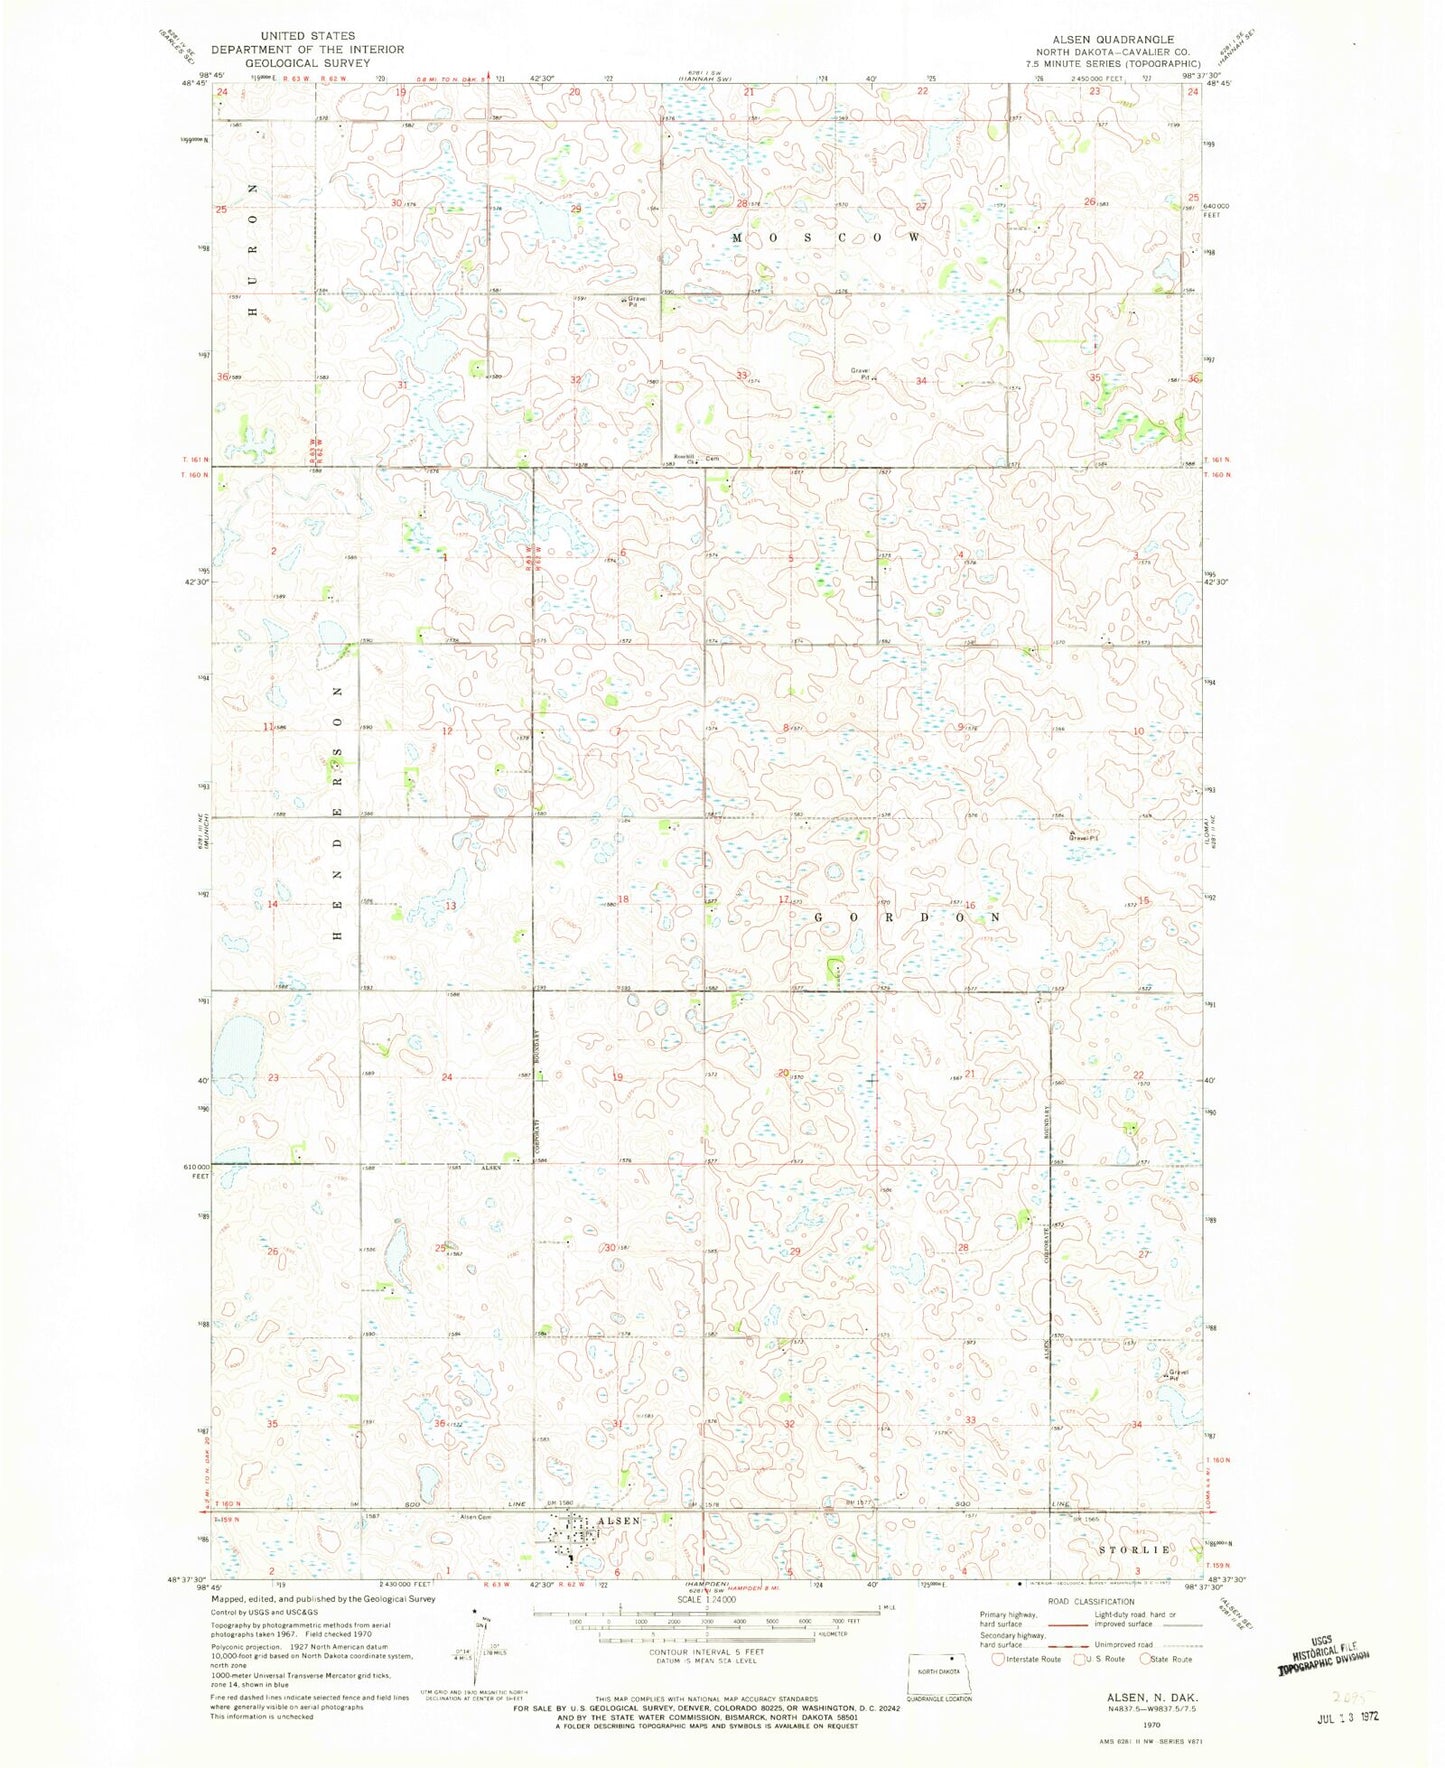 Classic USGS Alsen North Dakota 7.5'x7.5' Topo Map Image